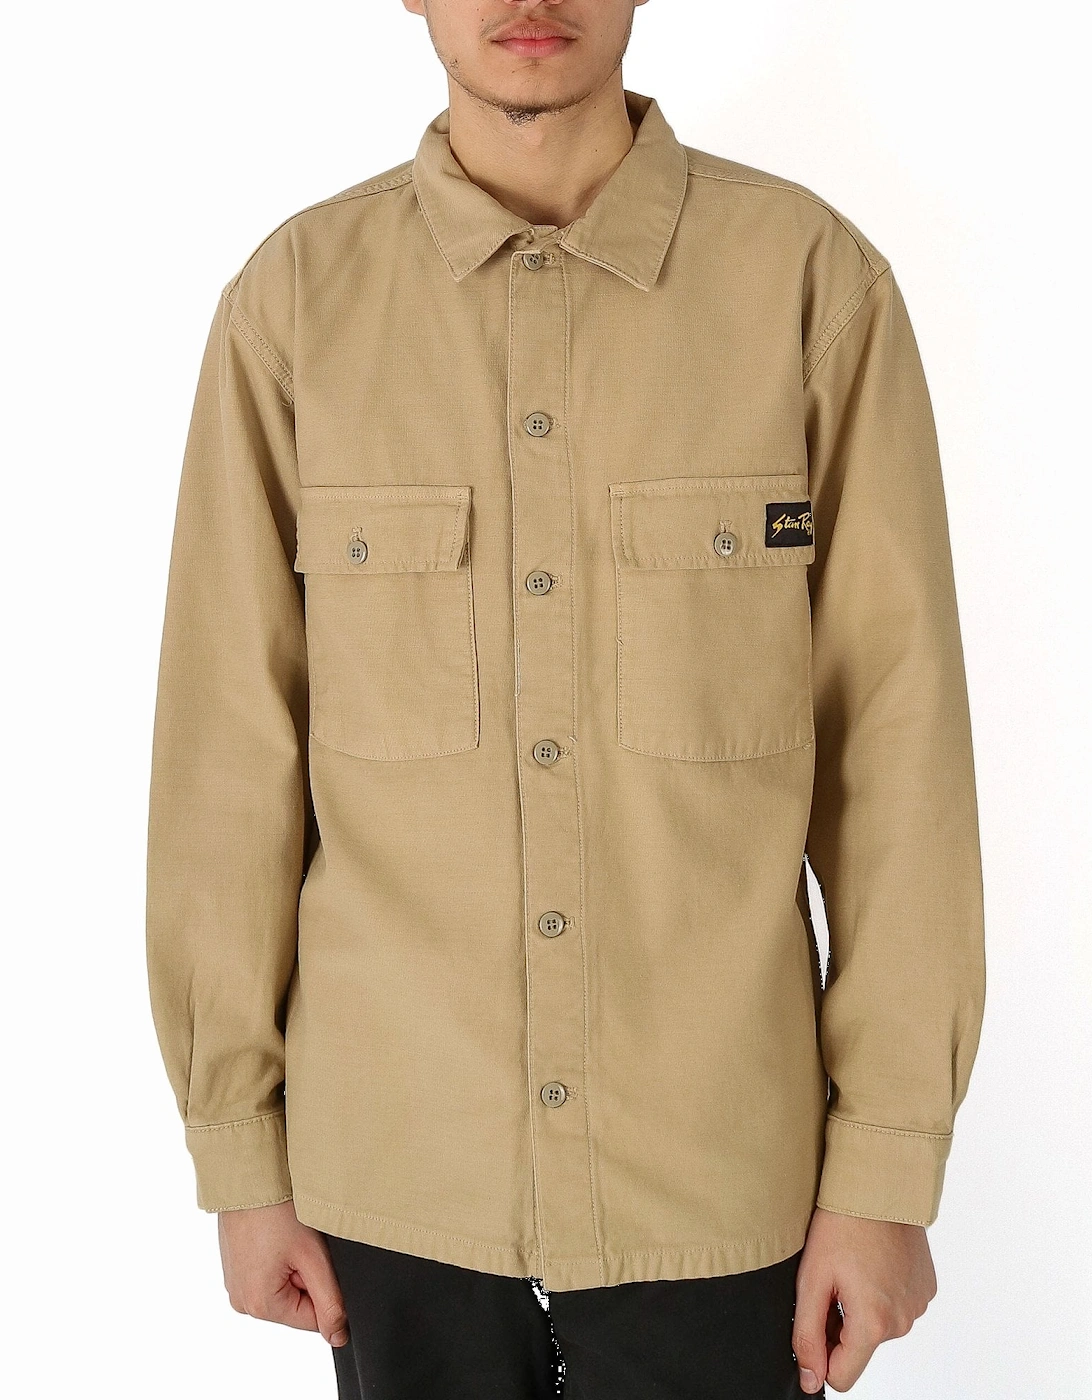 CPO Washed khaki Overshirt Jacket, 5 of 4